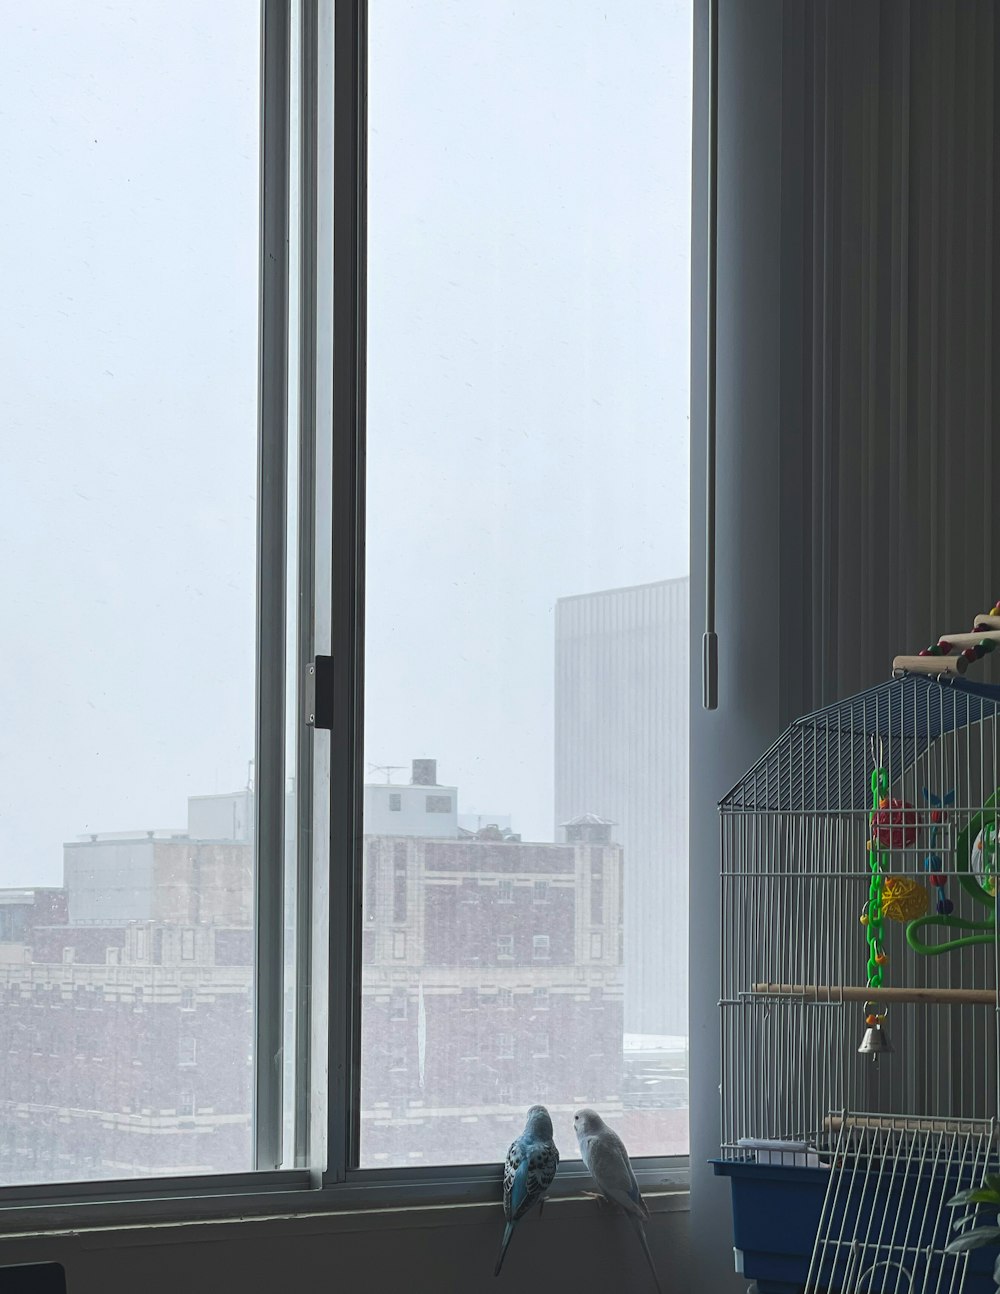 gabbia per uccelli vicino alla finestra di vetro